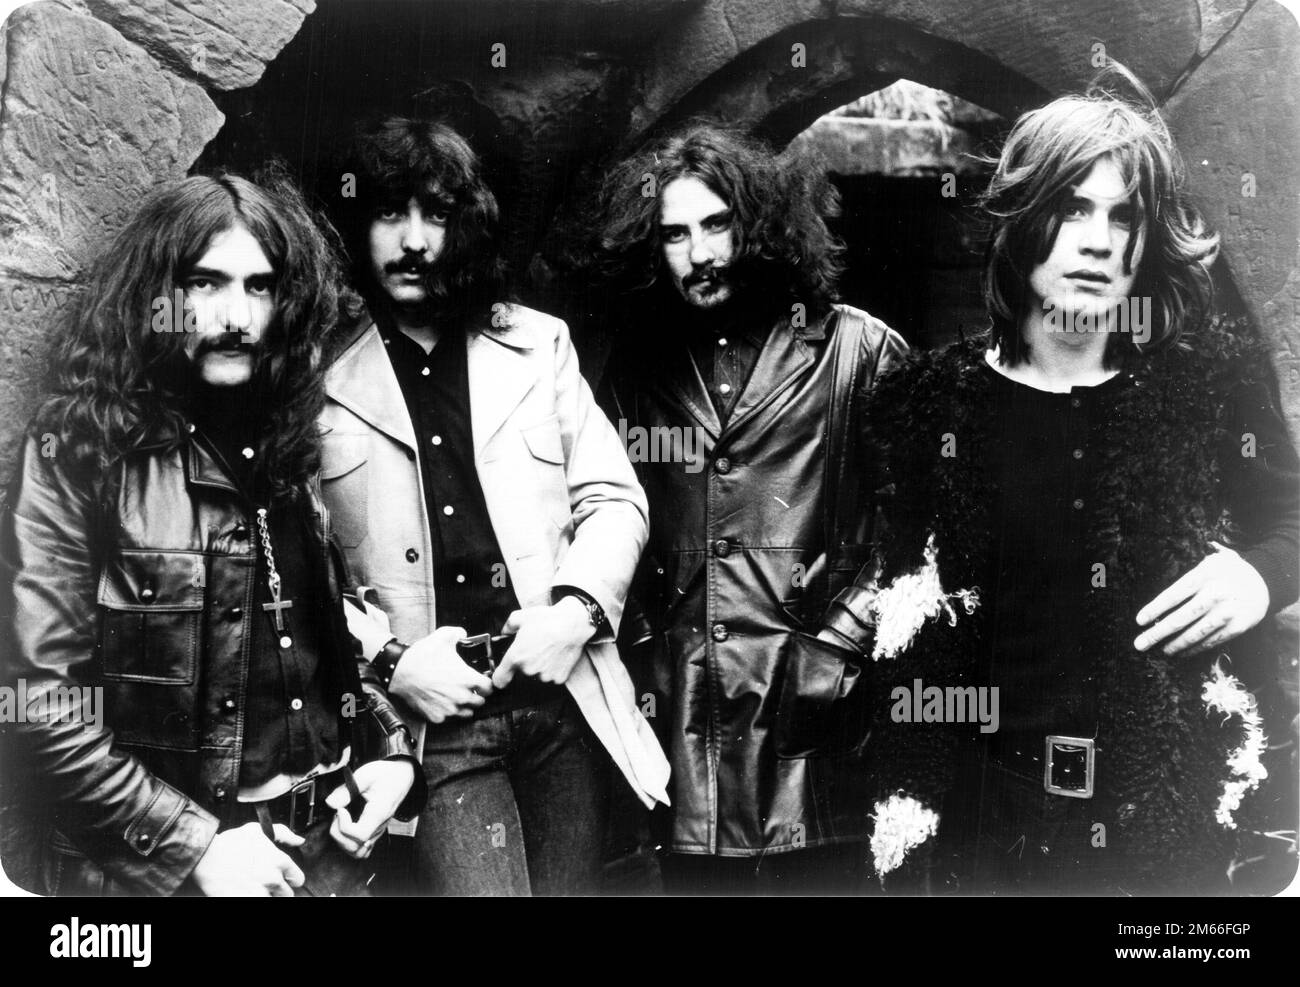 Erfinder von Heavy Metal - Black Sabbath (1970) Geezer Butler, Tony Iommi, Bill ward, Ozzy Osbourne. Stockfoto